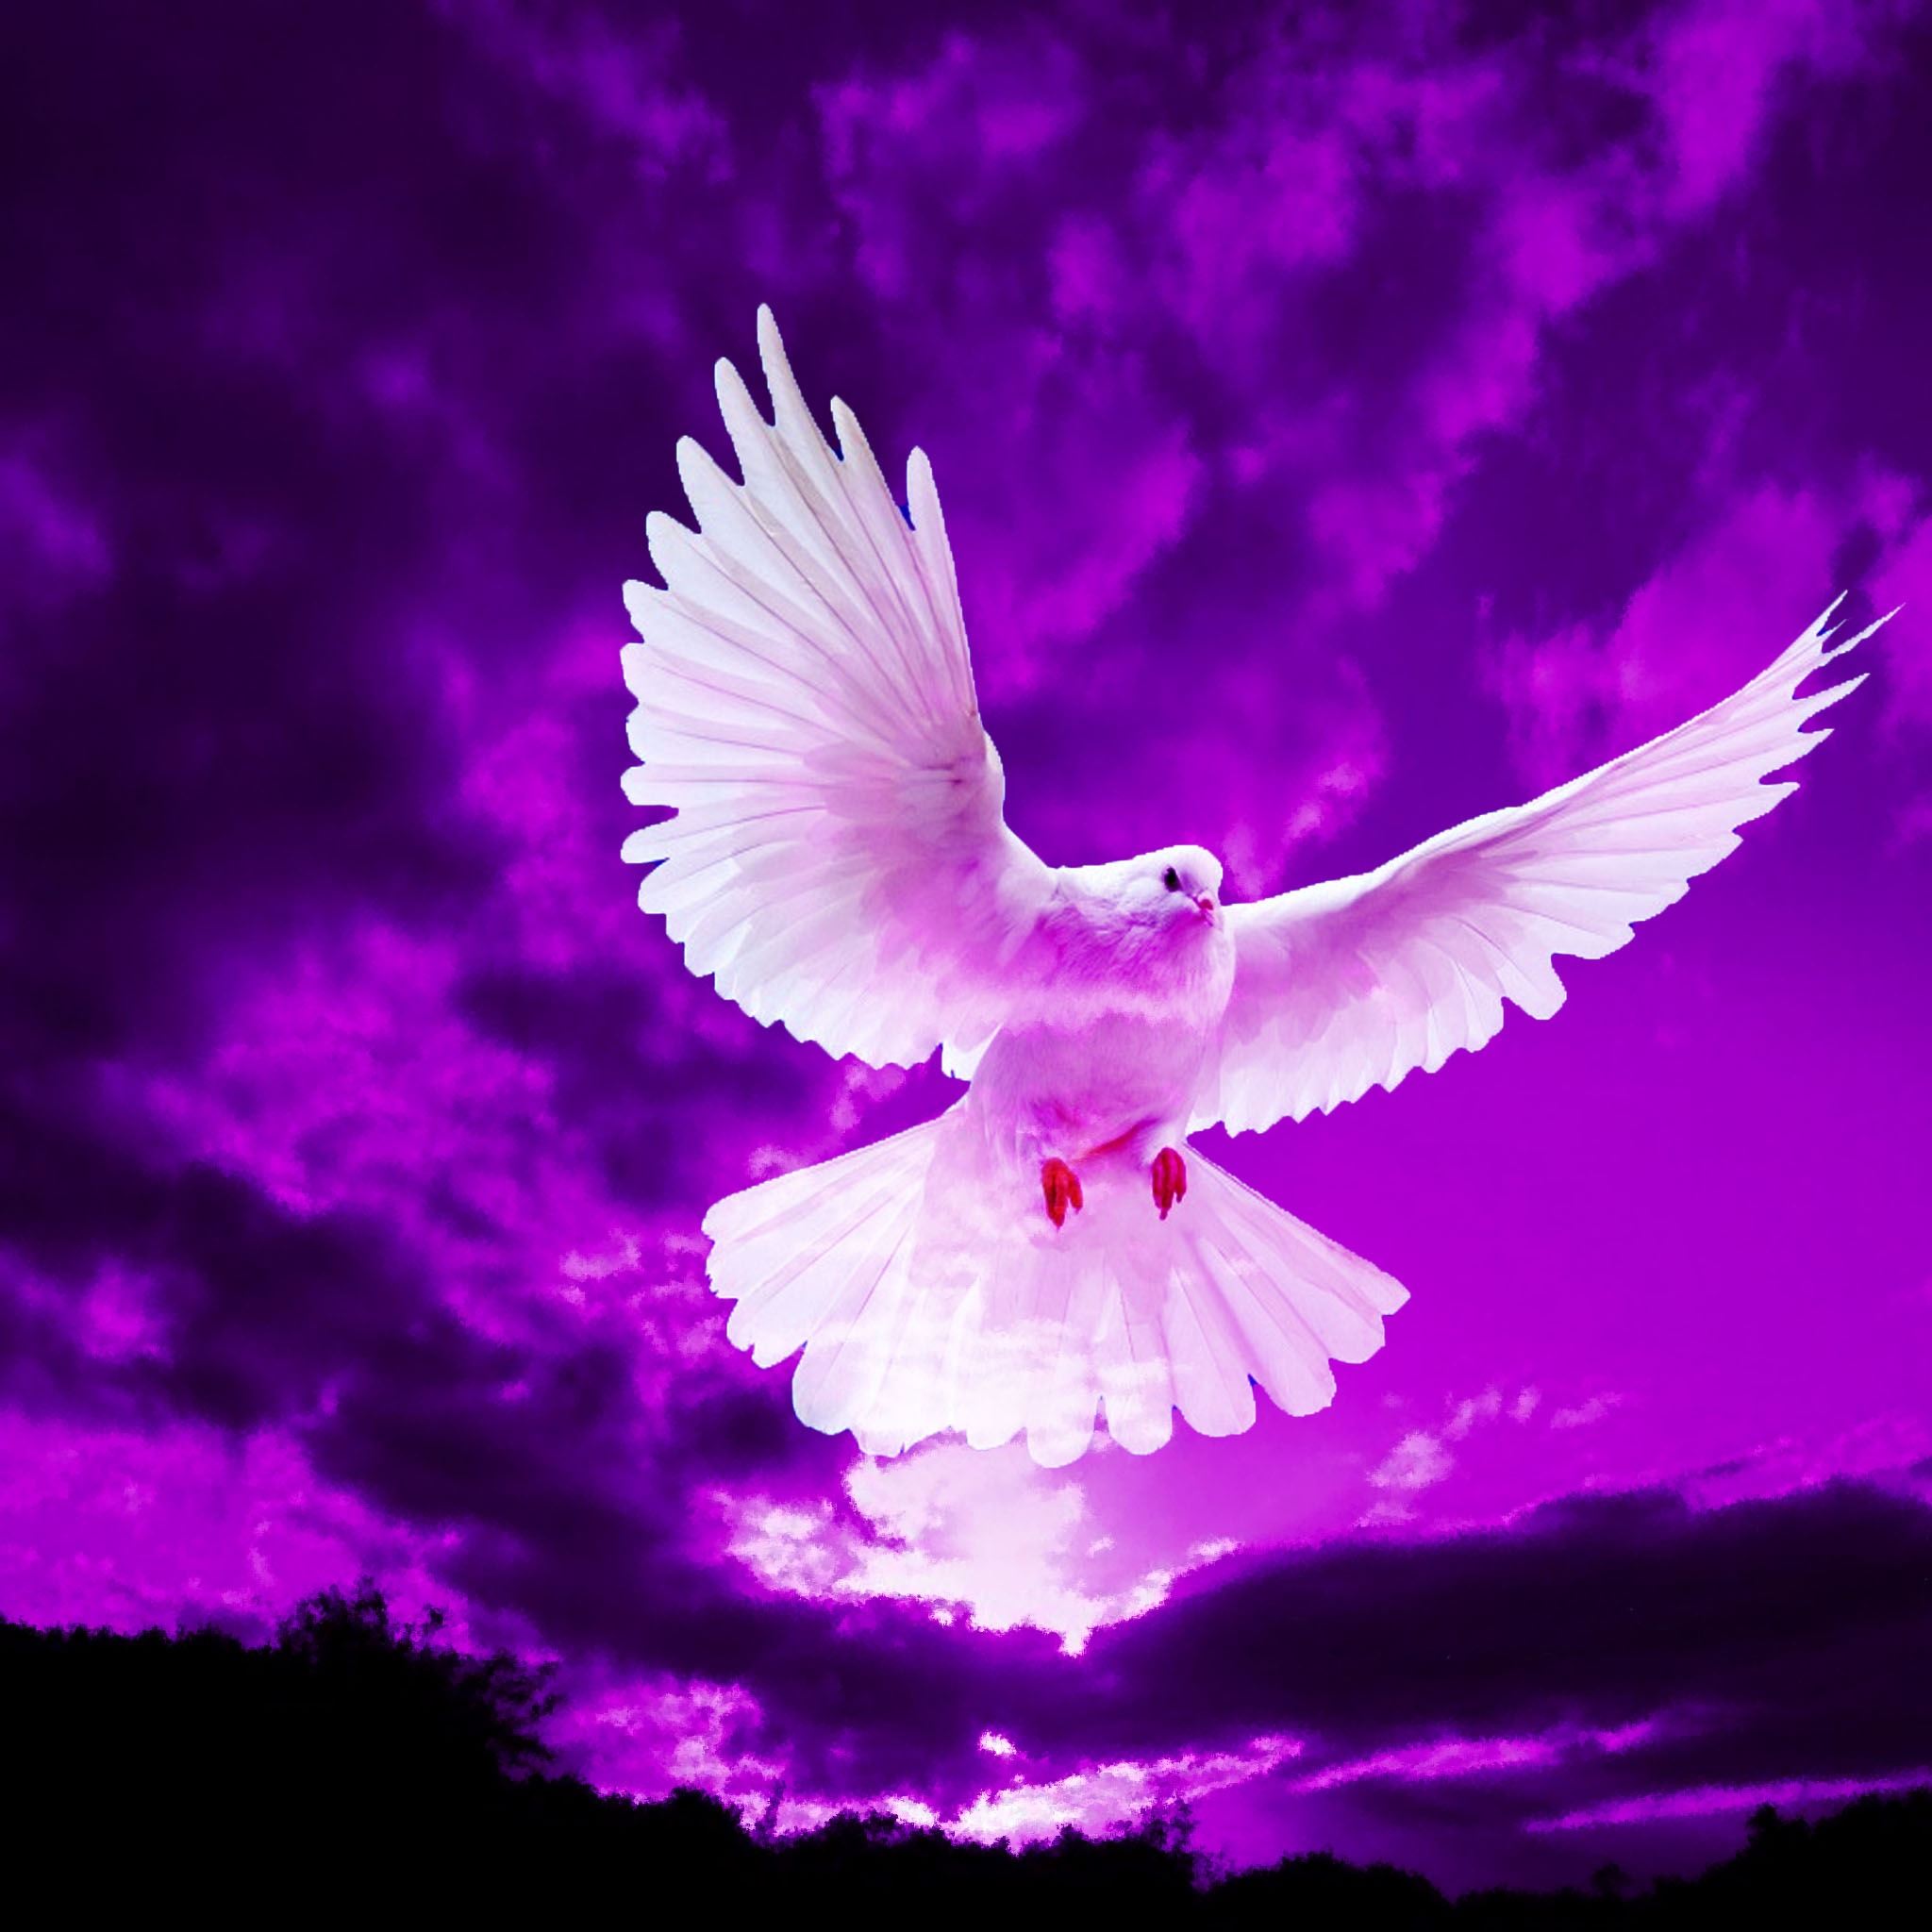 Pigeon Flying In Purple Sky iPad Air wallpaper 